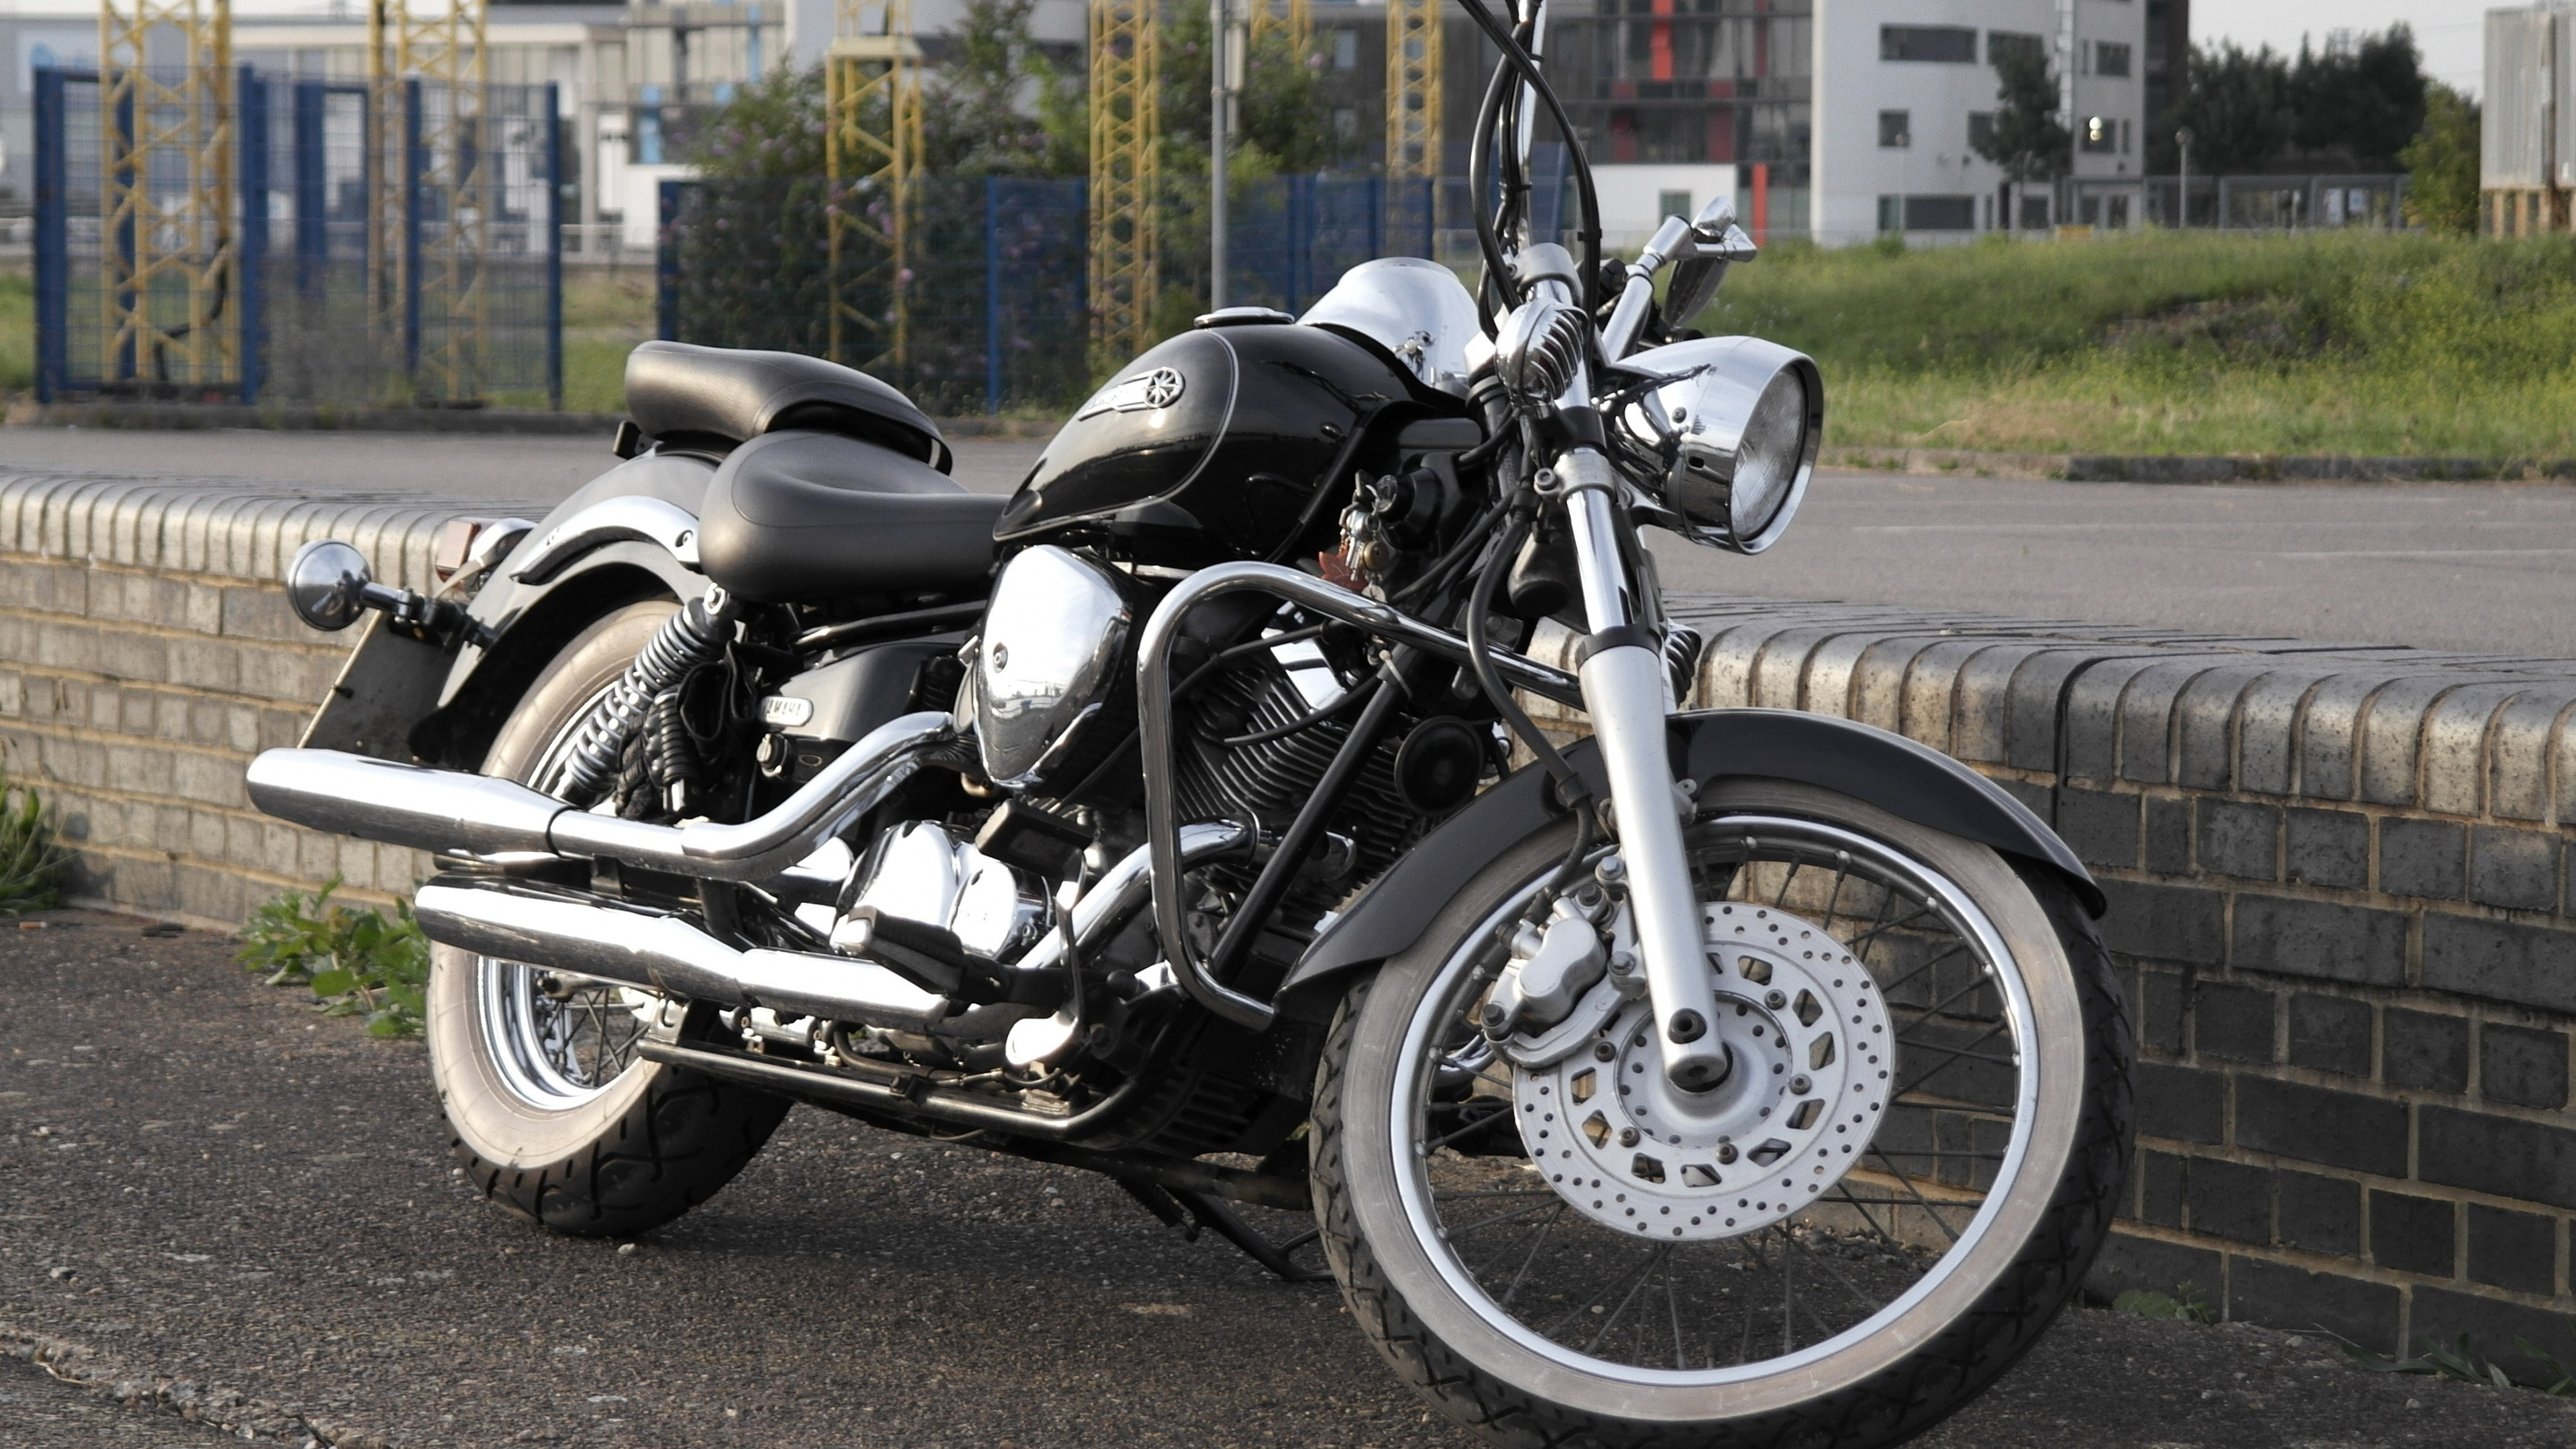 Motocicleta Cruiser Negra y Plateada en la Carretera Durante el Día. Wallpaper in 3840x2160 Resolution